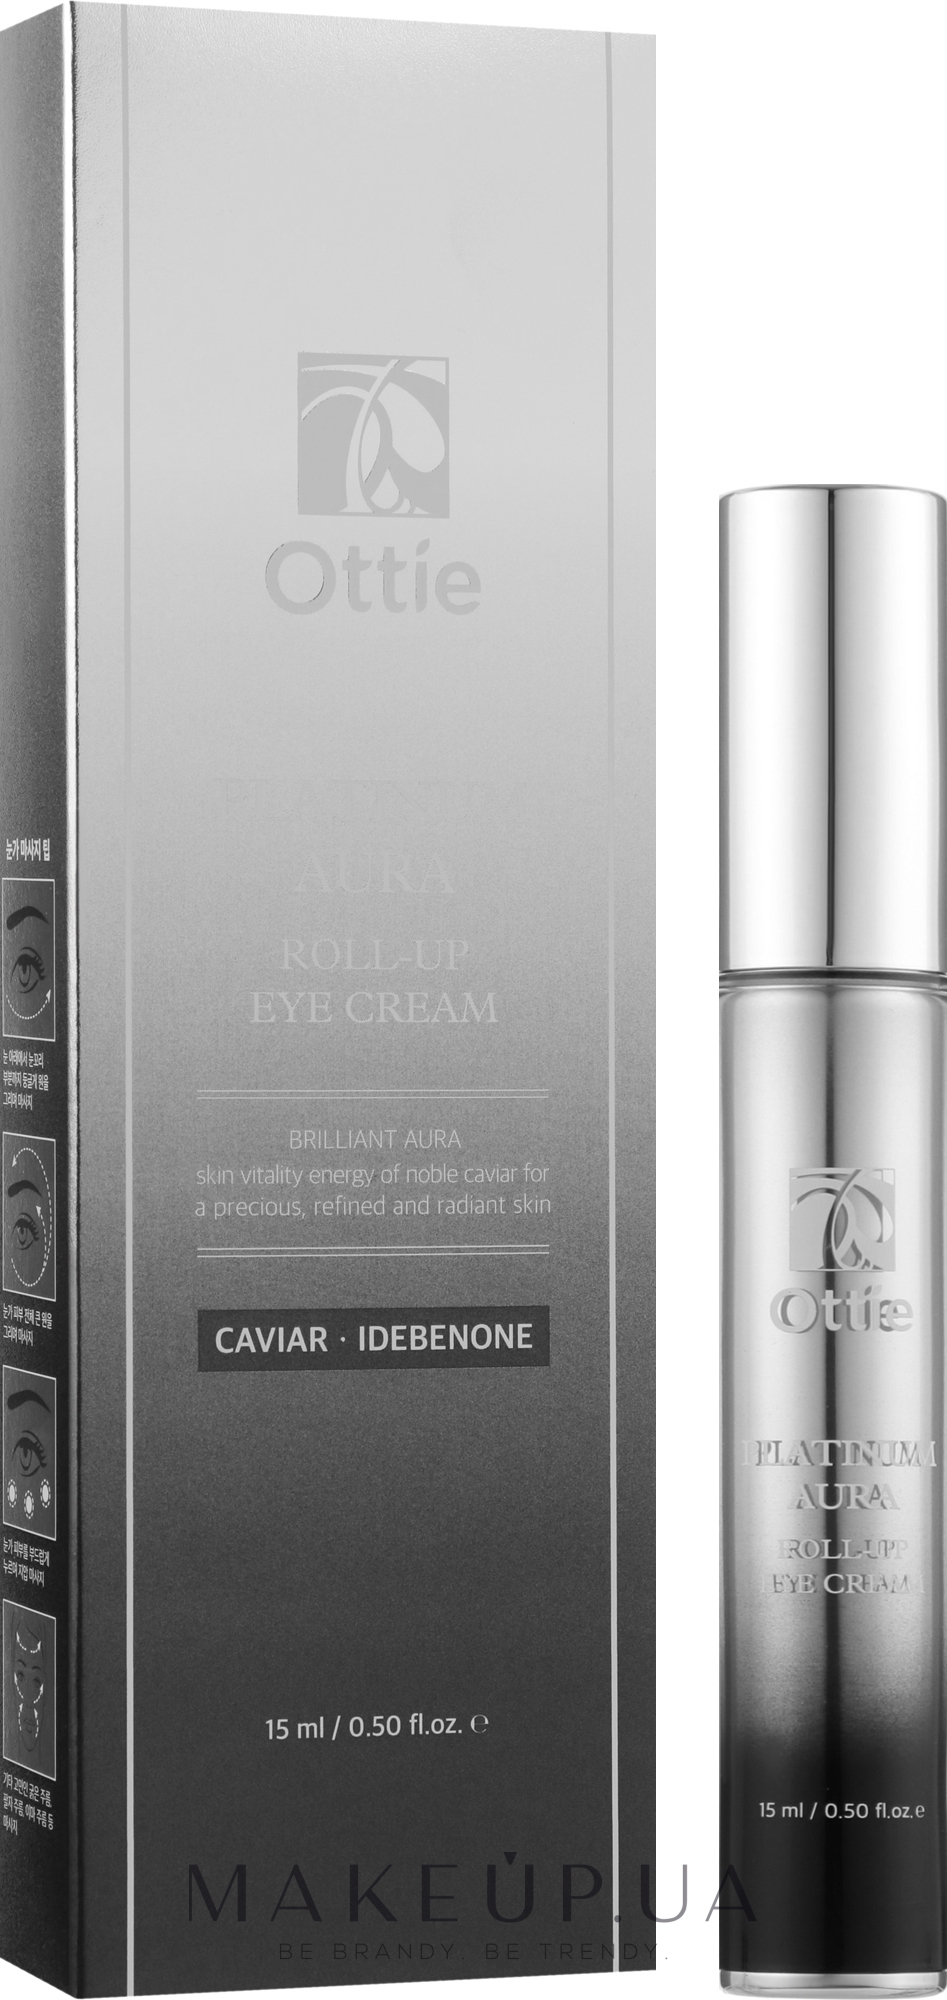 Крем для век с платиной и экстрактом черной икры, с роллером - Ottie Platinum Aura Roll-Up Eye Cream  — фото 15ml